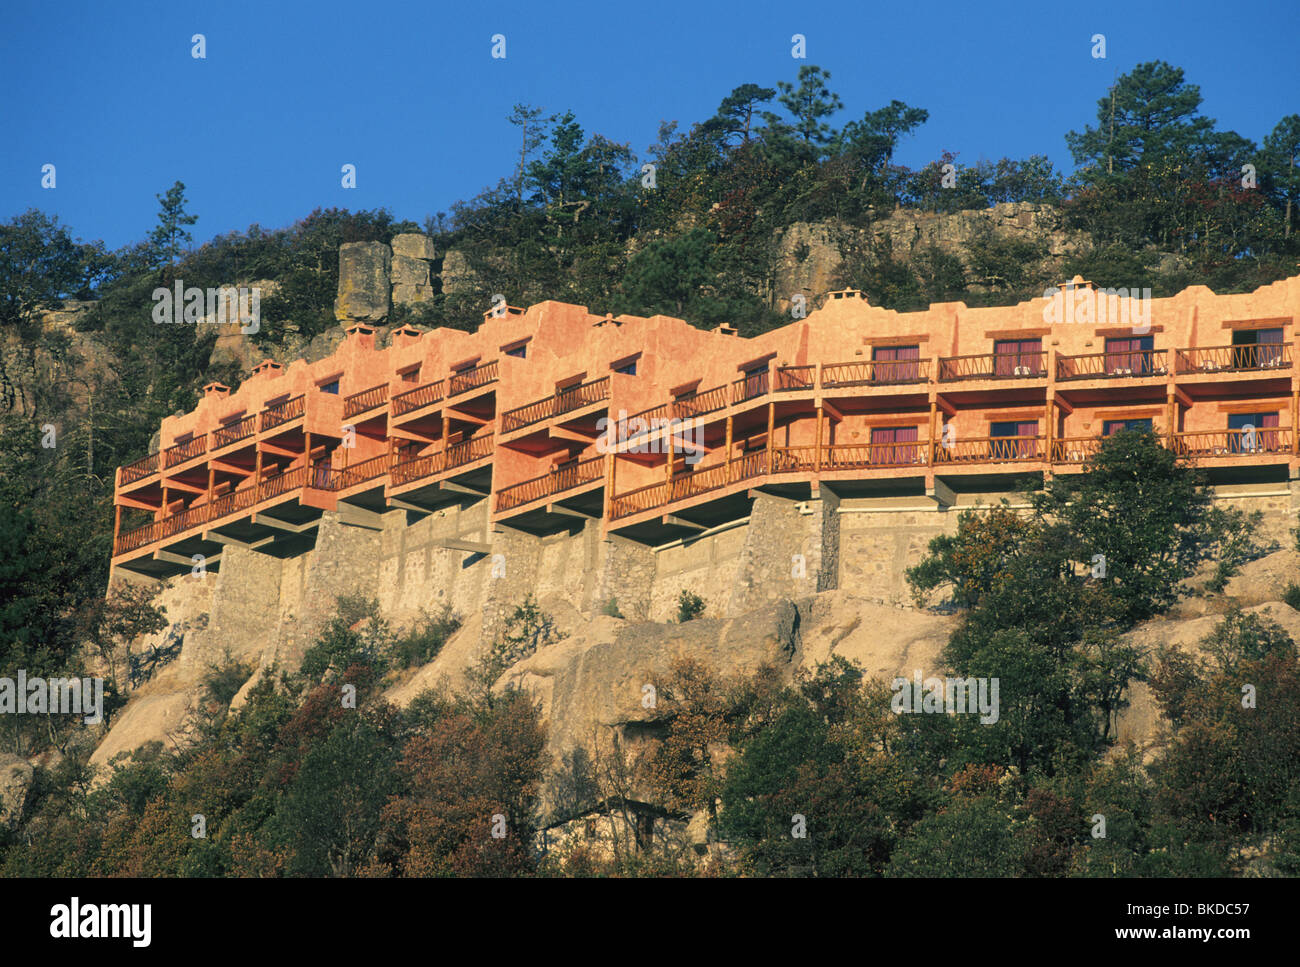 Mexiko, Copper Canyon, Posada Barrancas Mirador Hotel, neues Hotel direkt am Canyonrand. Stockfoto